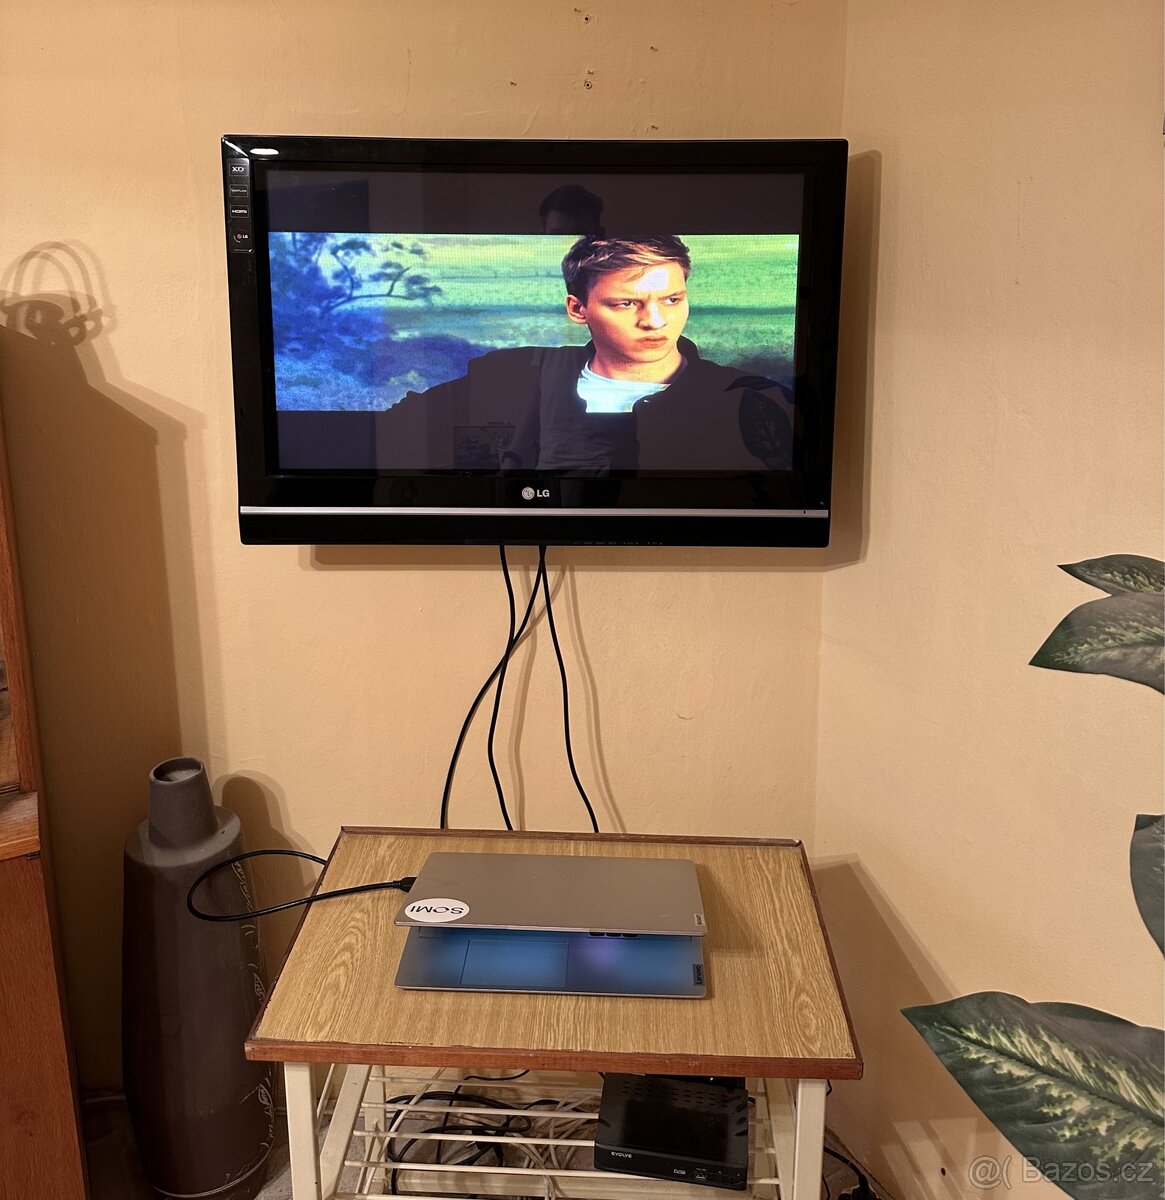 Prodám televizi LG+ set-top box+ držák na zeď